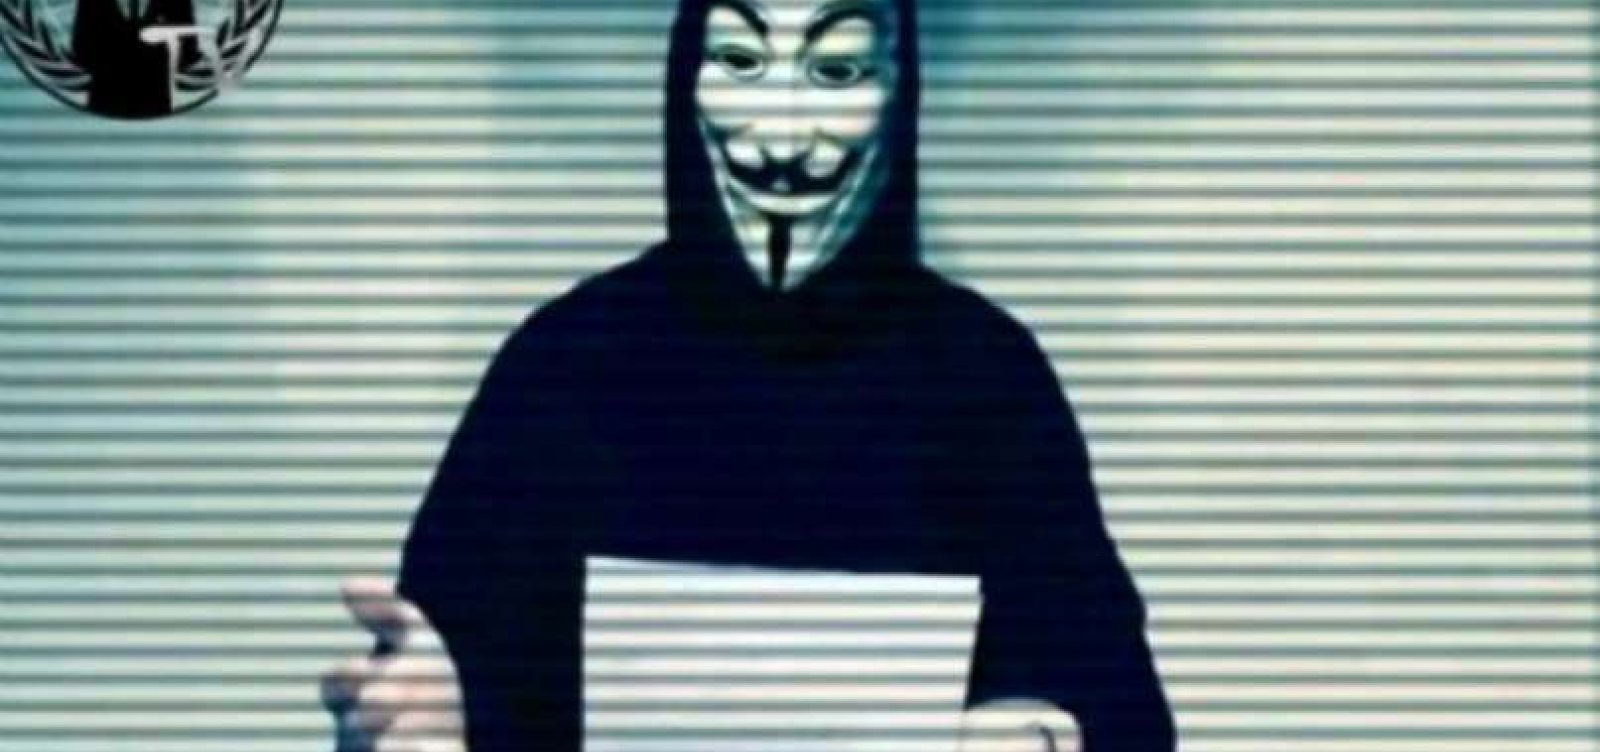 [Grupo hacker Anonymous expõe dados de Bolsonaro, filhos e membros do governo]